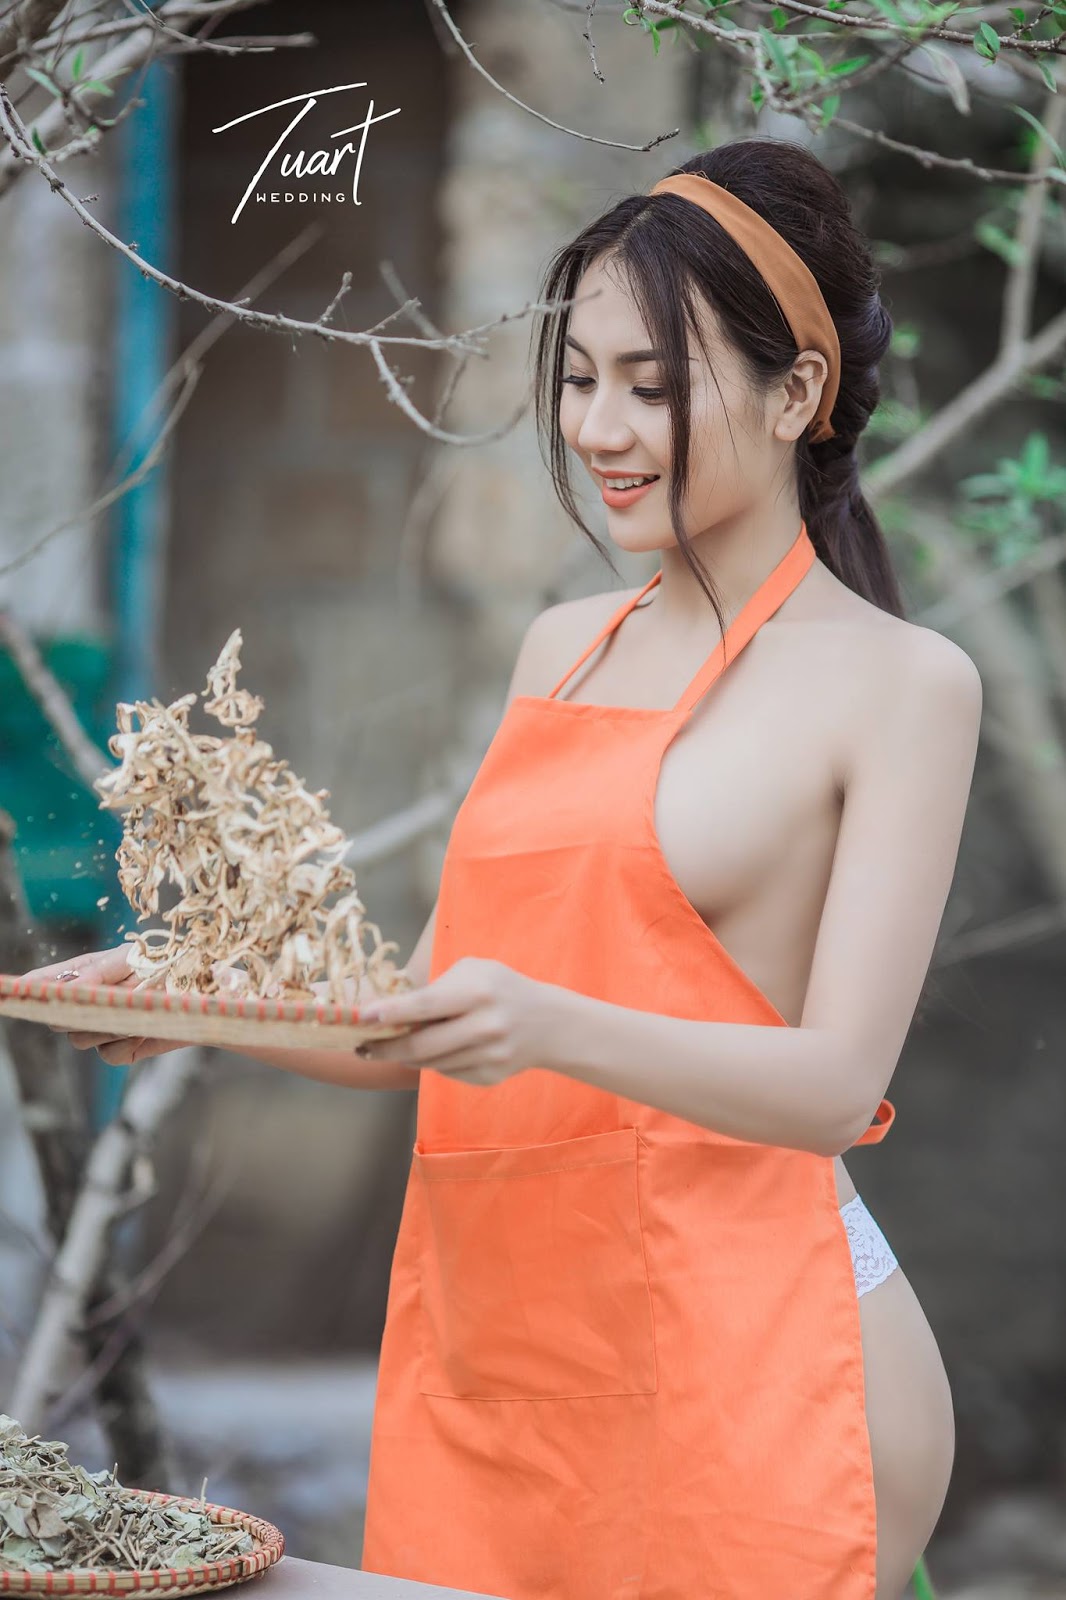 Вьетнамские девушки голые 